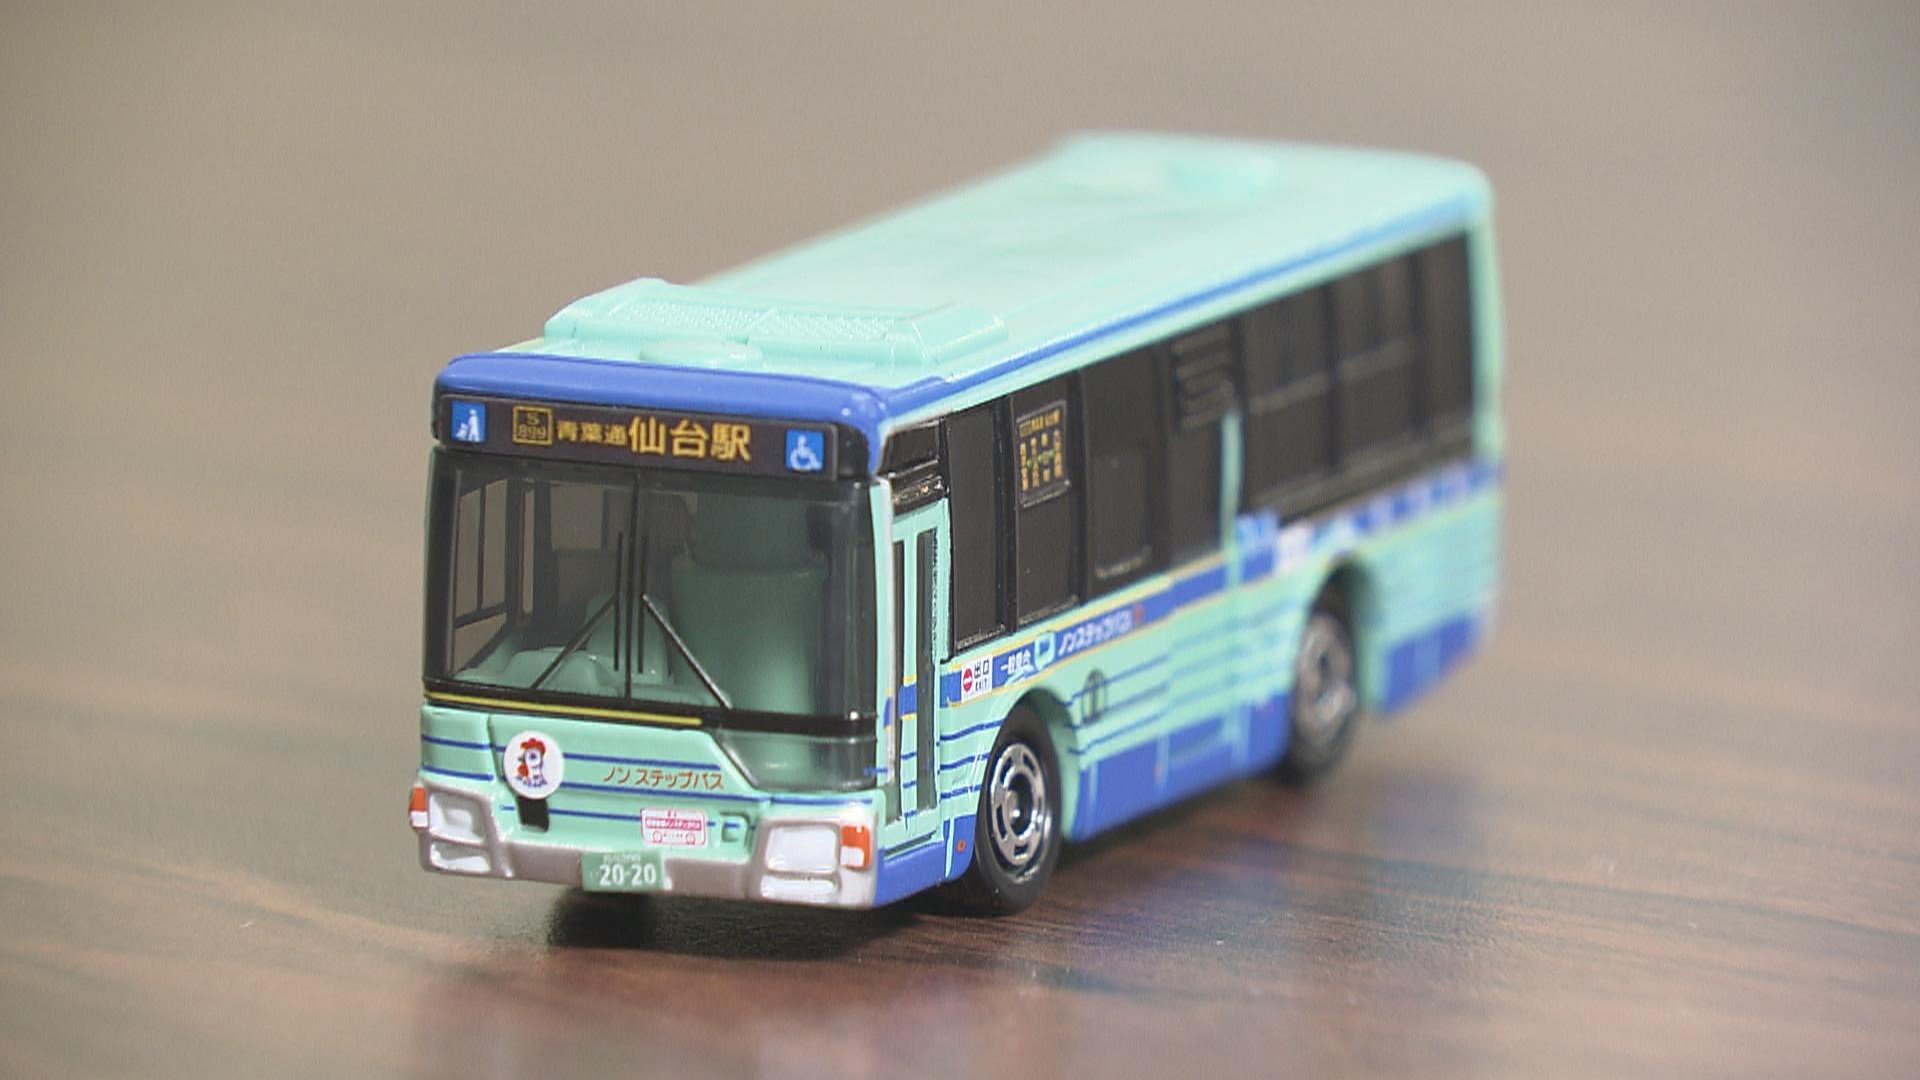 倍率9倍！」仙台市営バスのミニカー「限定5800個」抽選販売に“5万4500